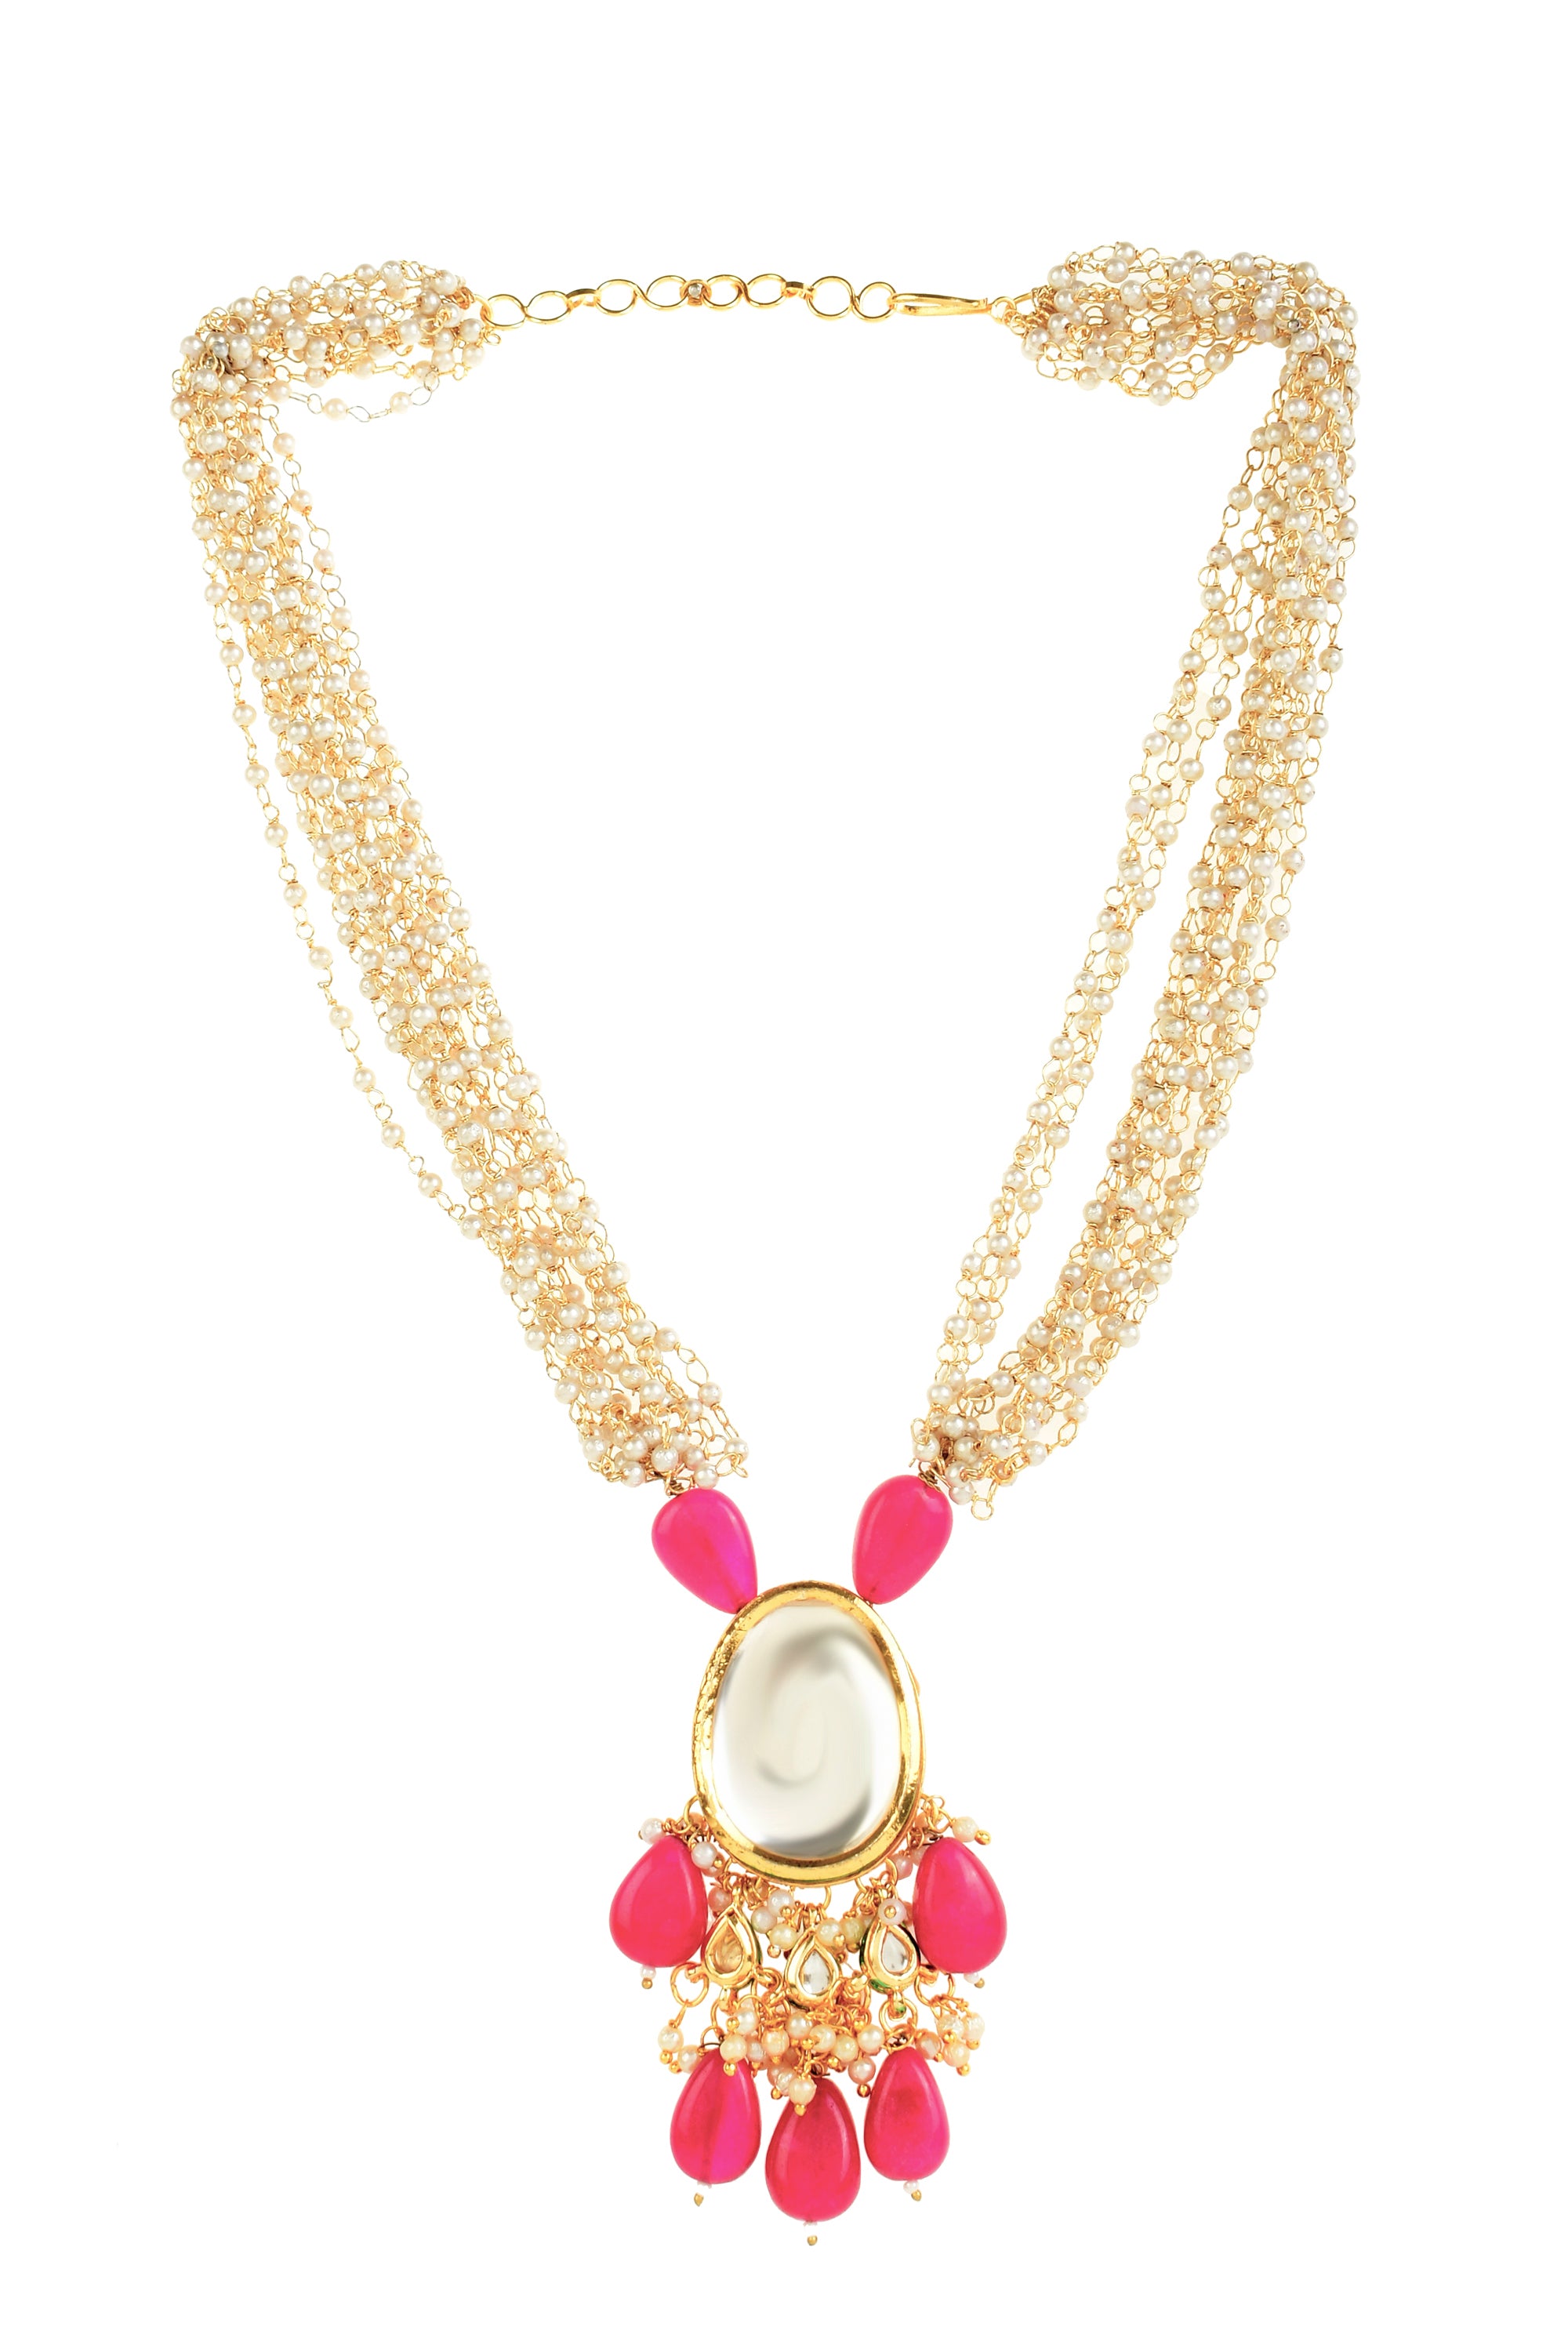 Women's  Ruby beaded Kundan necklace with earrings   - Femizen